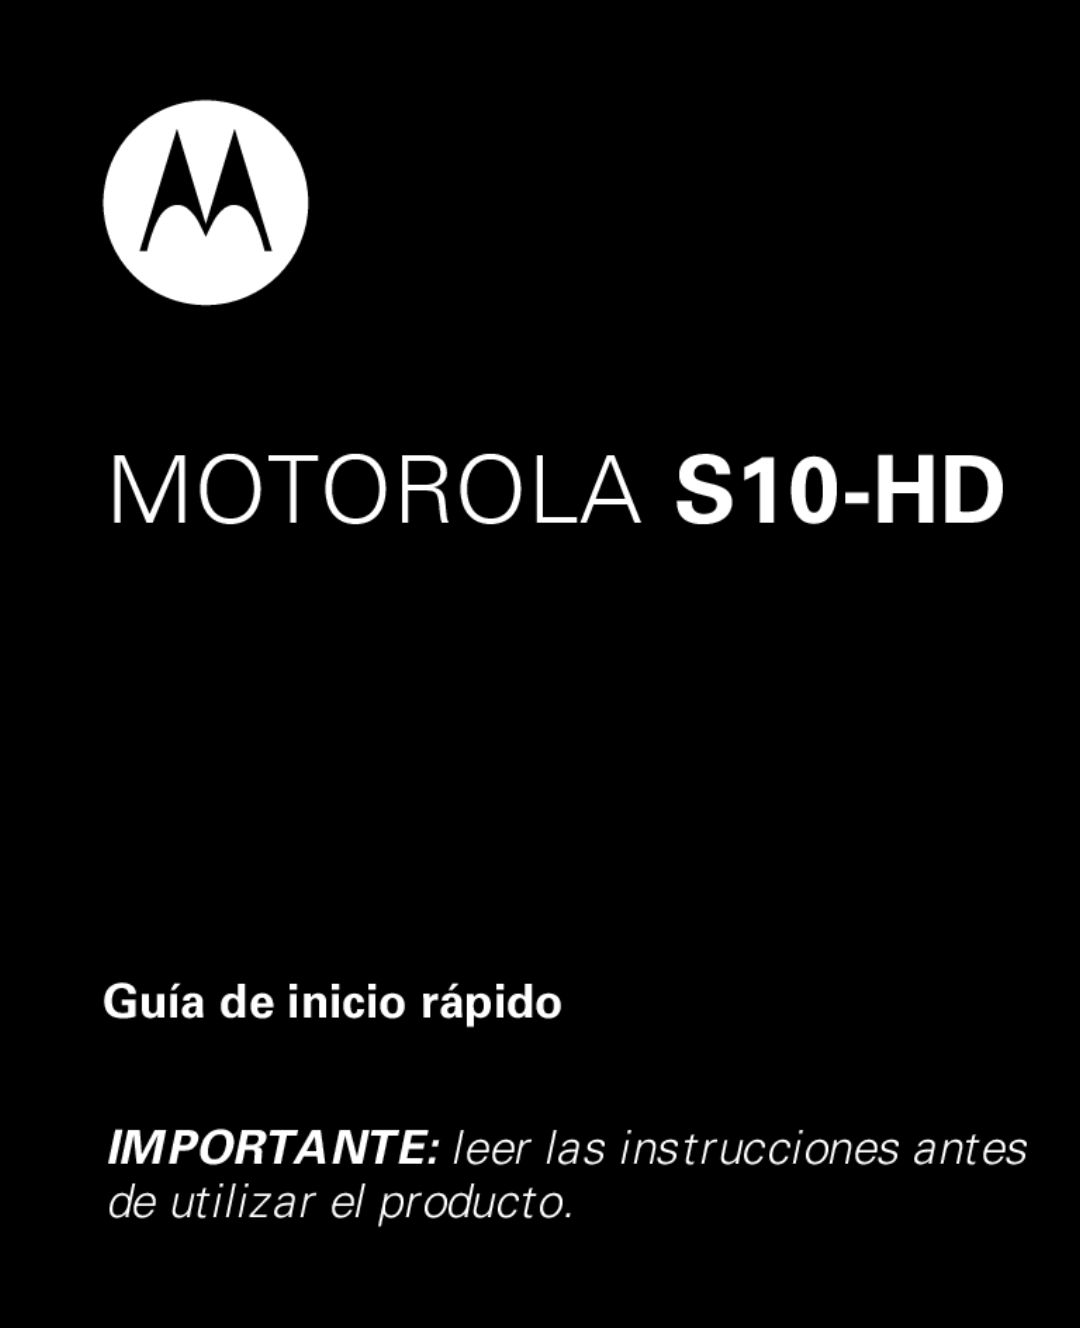 Motorola quick start Guía de inicio rápido, MOTOROLA S10-HD 